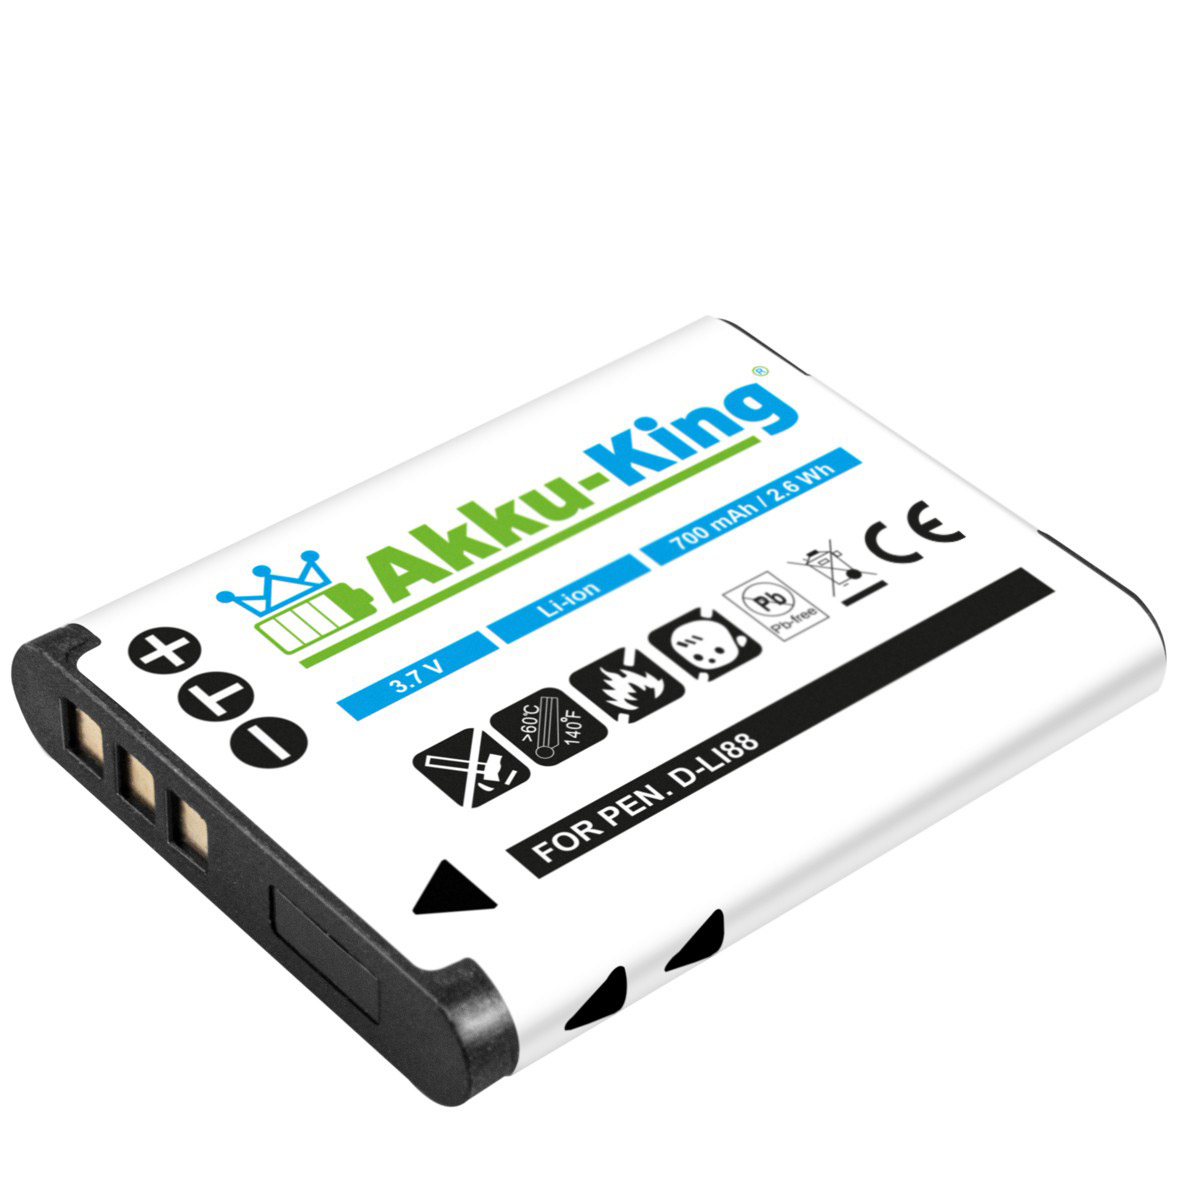 Akku AKKU-KING 3.7 Kamera-Akku, kompatibel 700mAh PX1686E-1BRS Toshiba mit Volt, Li-Ion